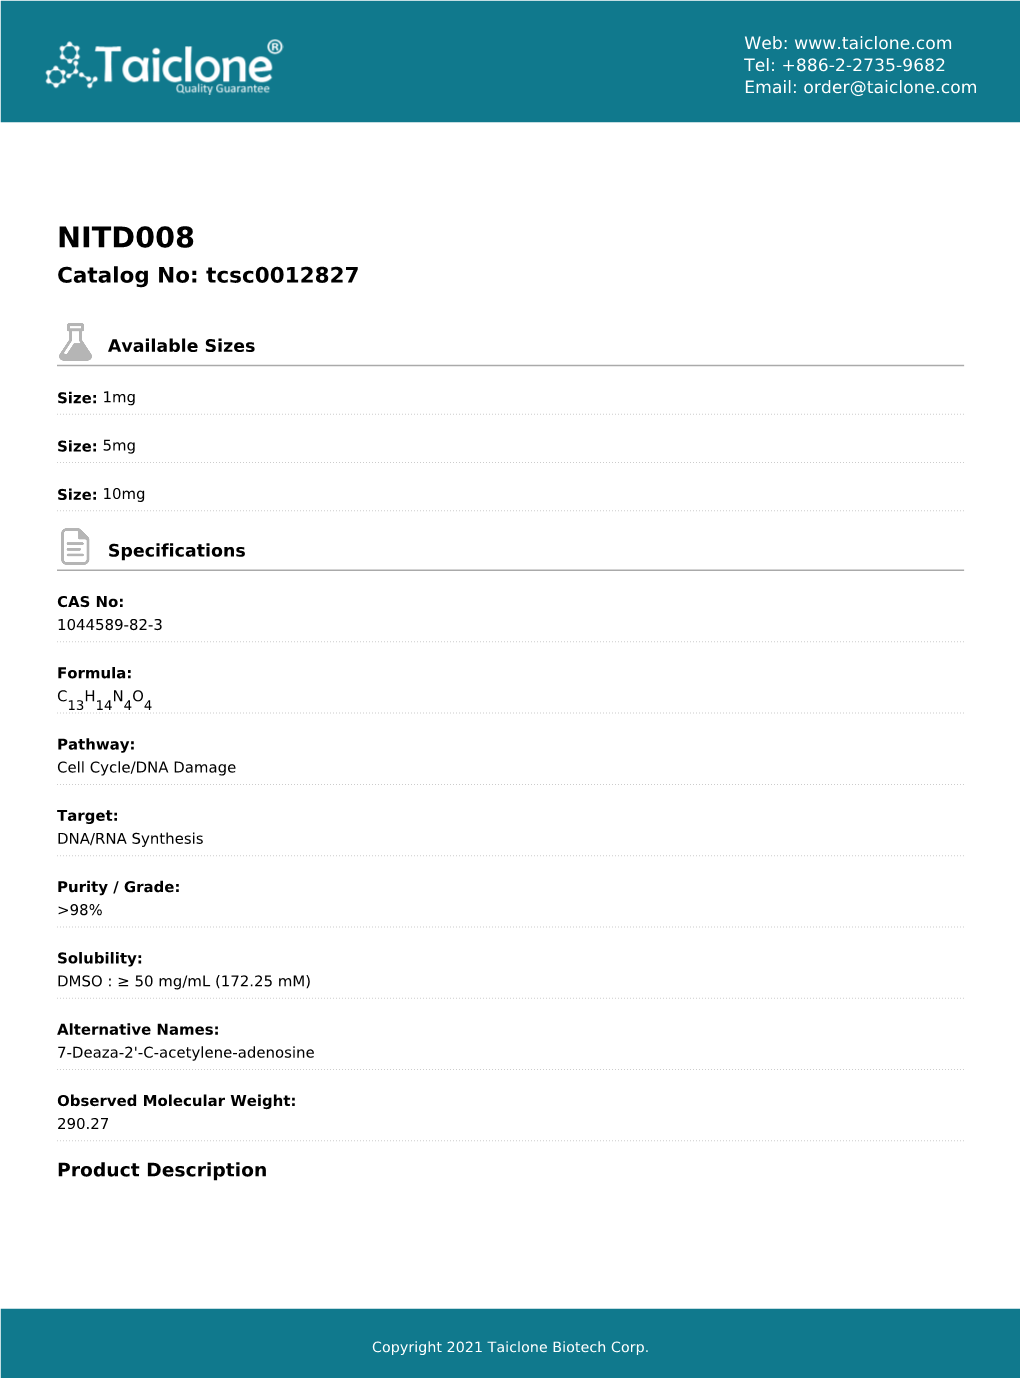 NITD008 Catalog No: Tcsc0012827